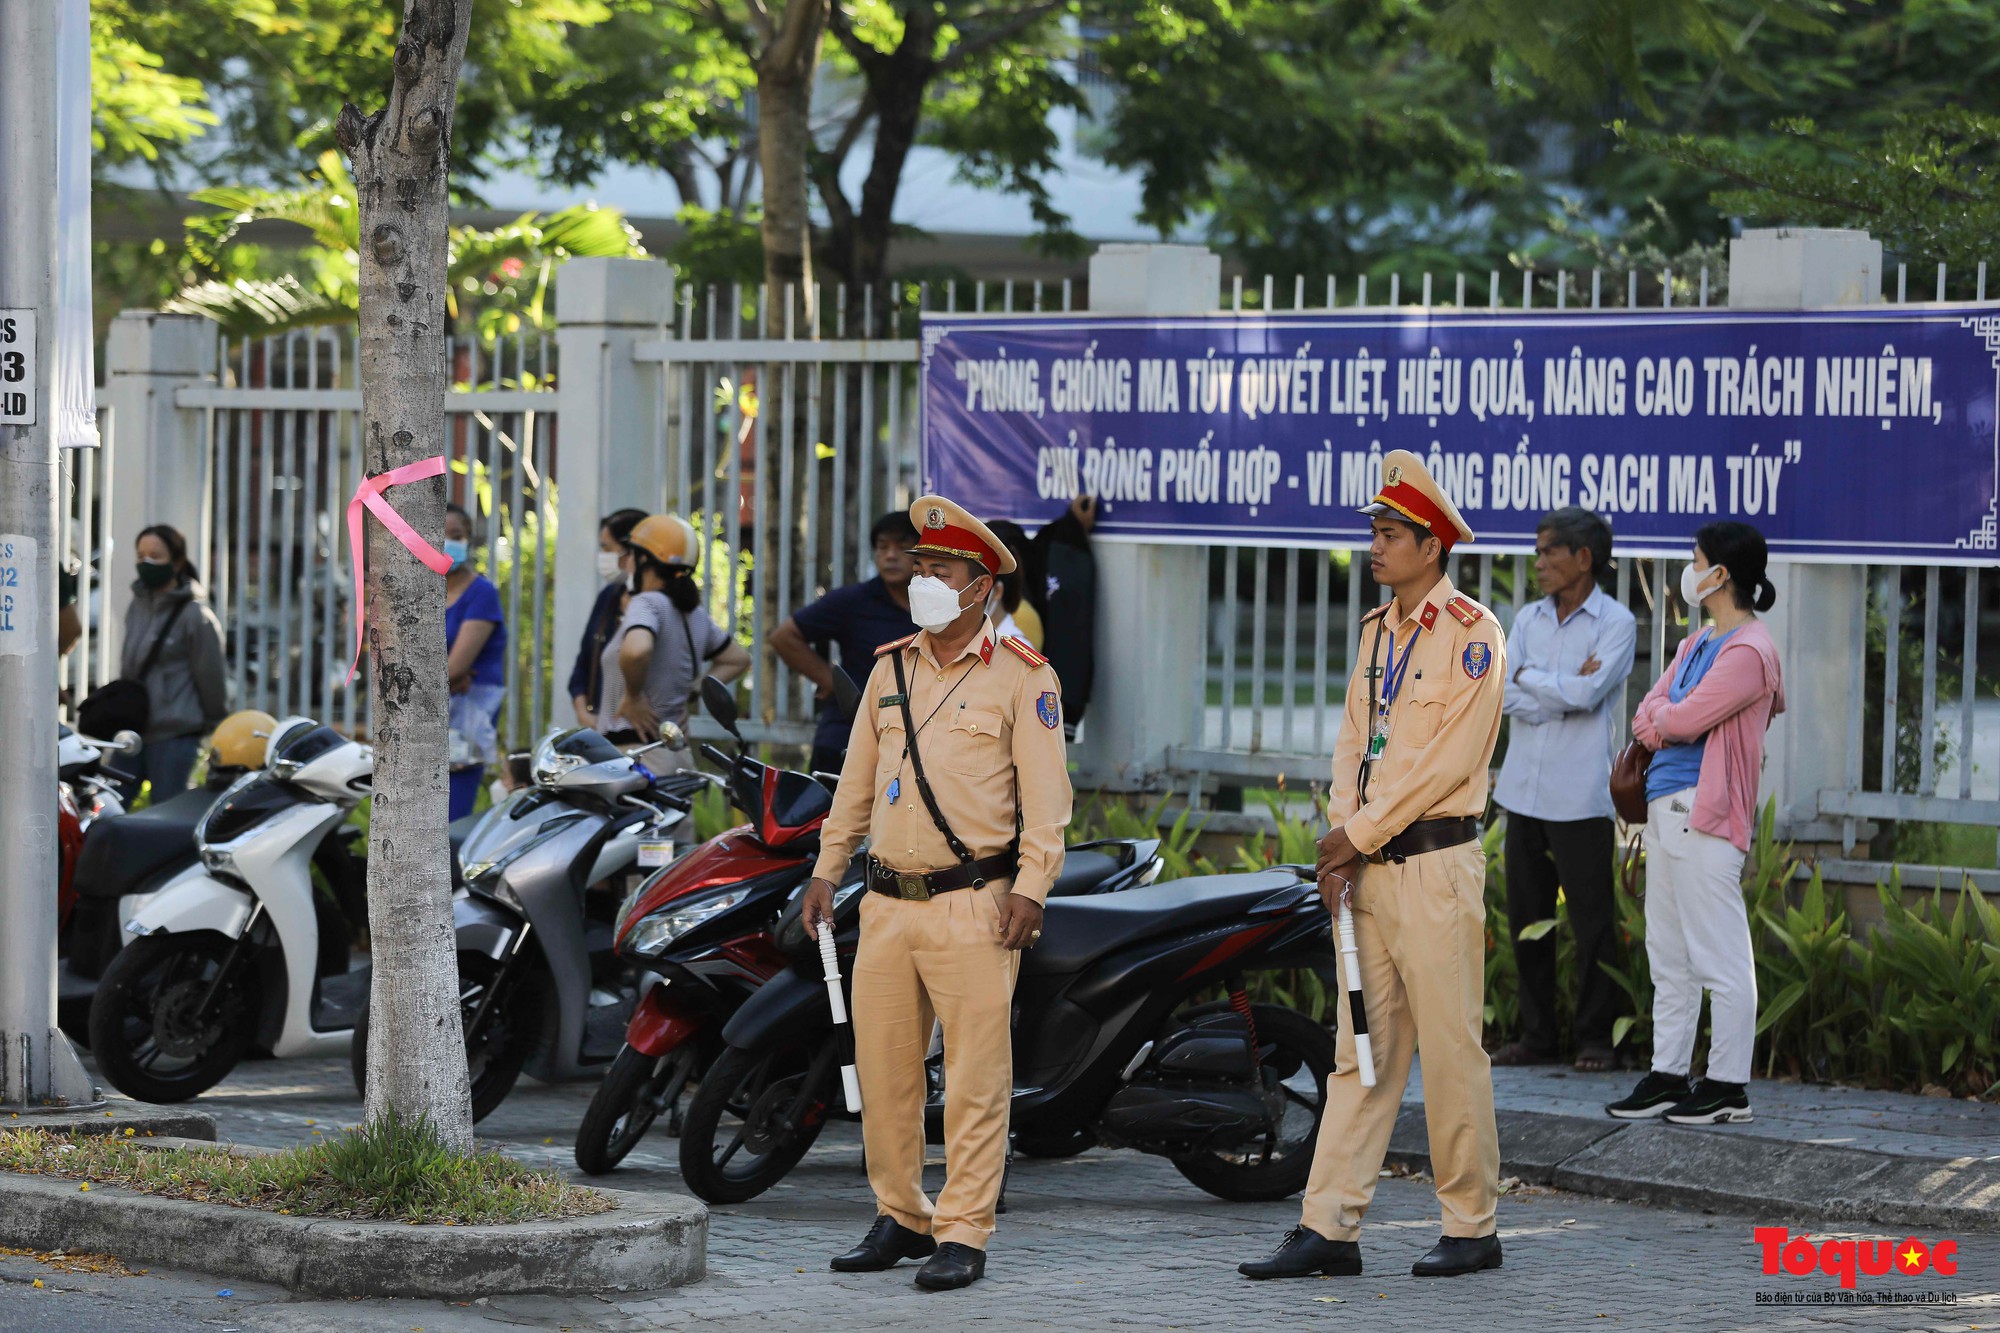 Cảnh sát giao thông Đà Nẵng phát nước và bút chì cho các sĩ tử - Ảnh 5.